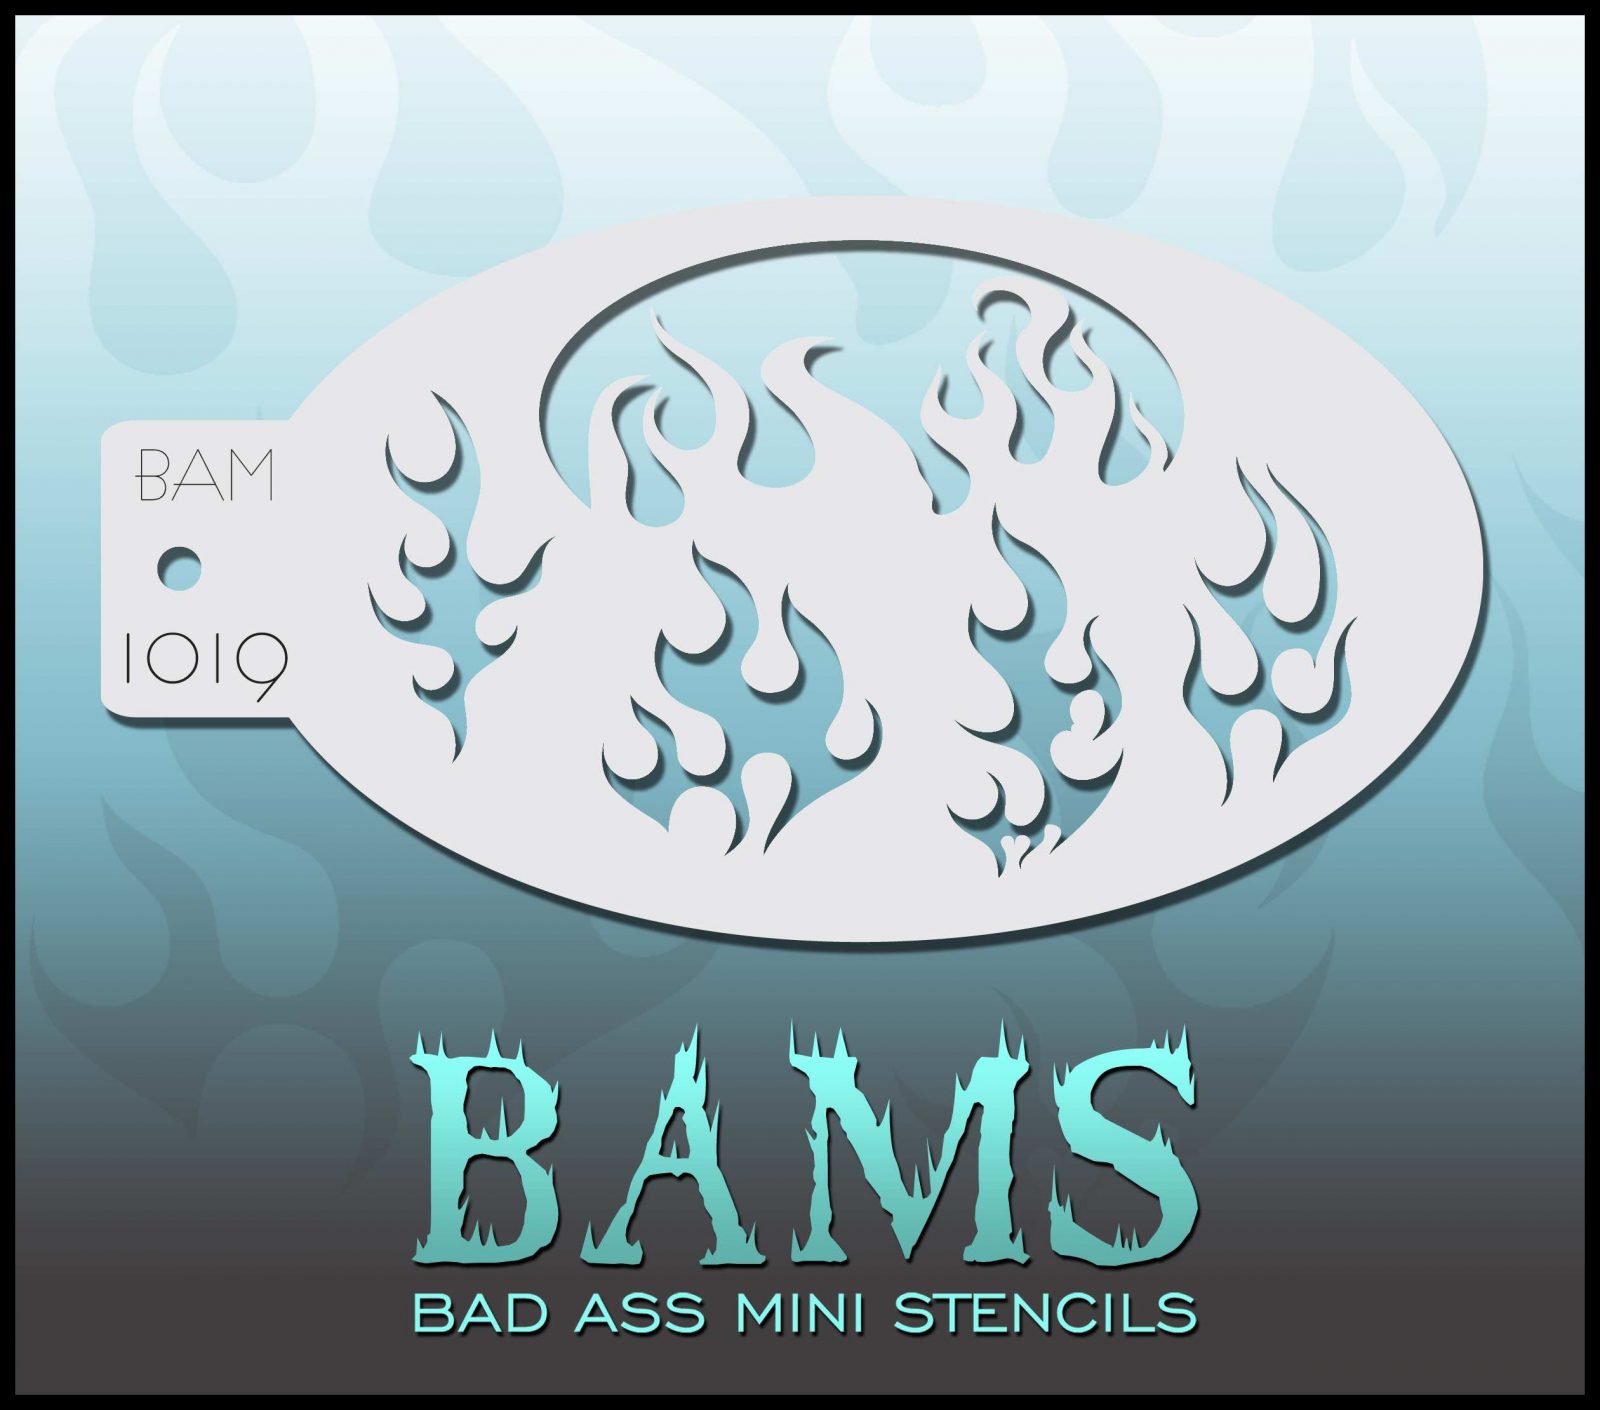 Bad Ass Stencils - BAM 1019 Flames Fire